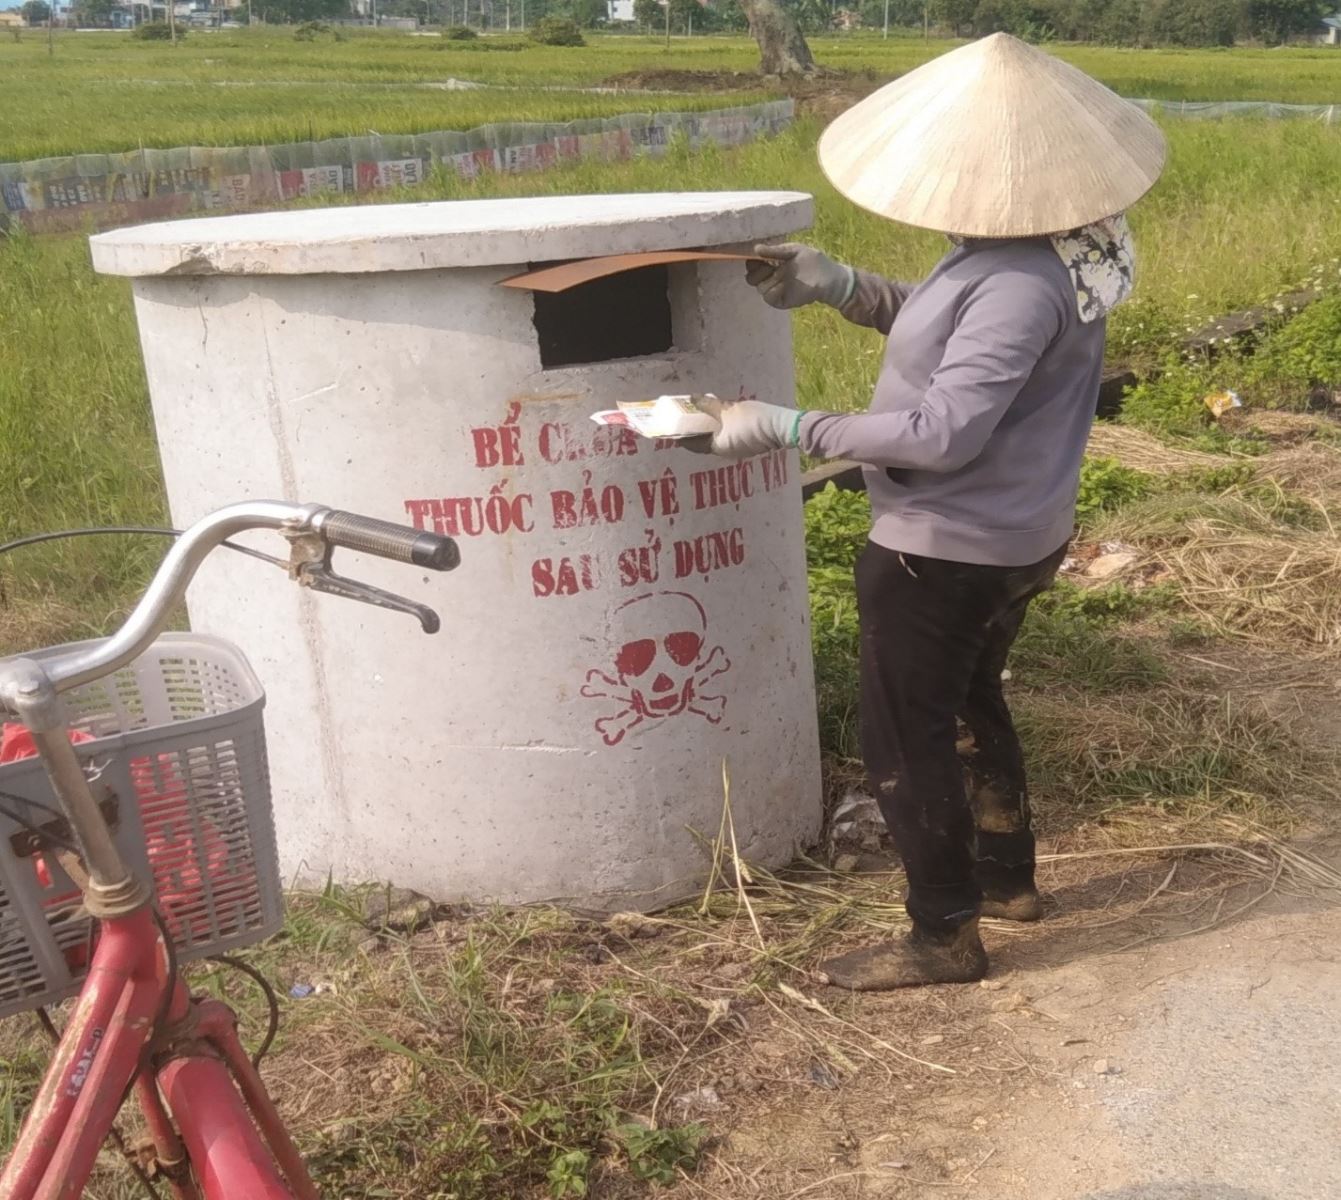 Xử lý bao bì, thuốc bảo vệ thực vật bằng bể thu gom, góp phần vào tiêu chí xây dựng Nông thôn mới kiểu mẫu tại xã Bát Trang